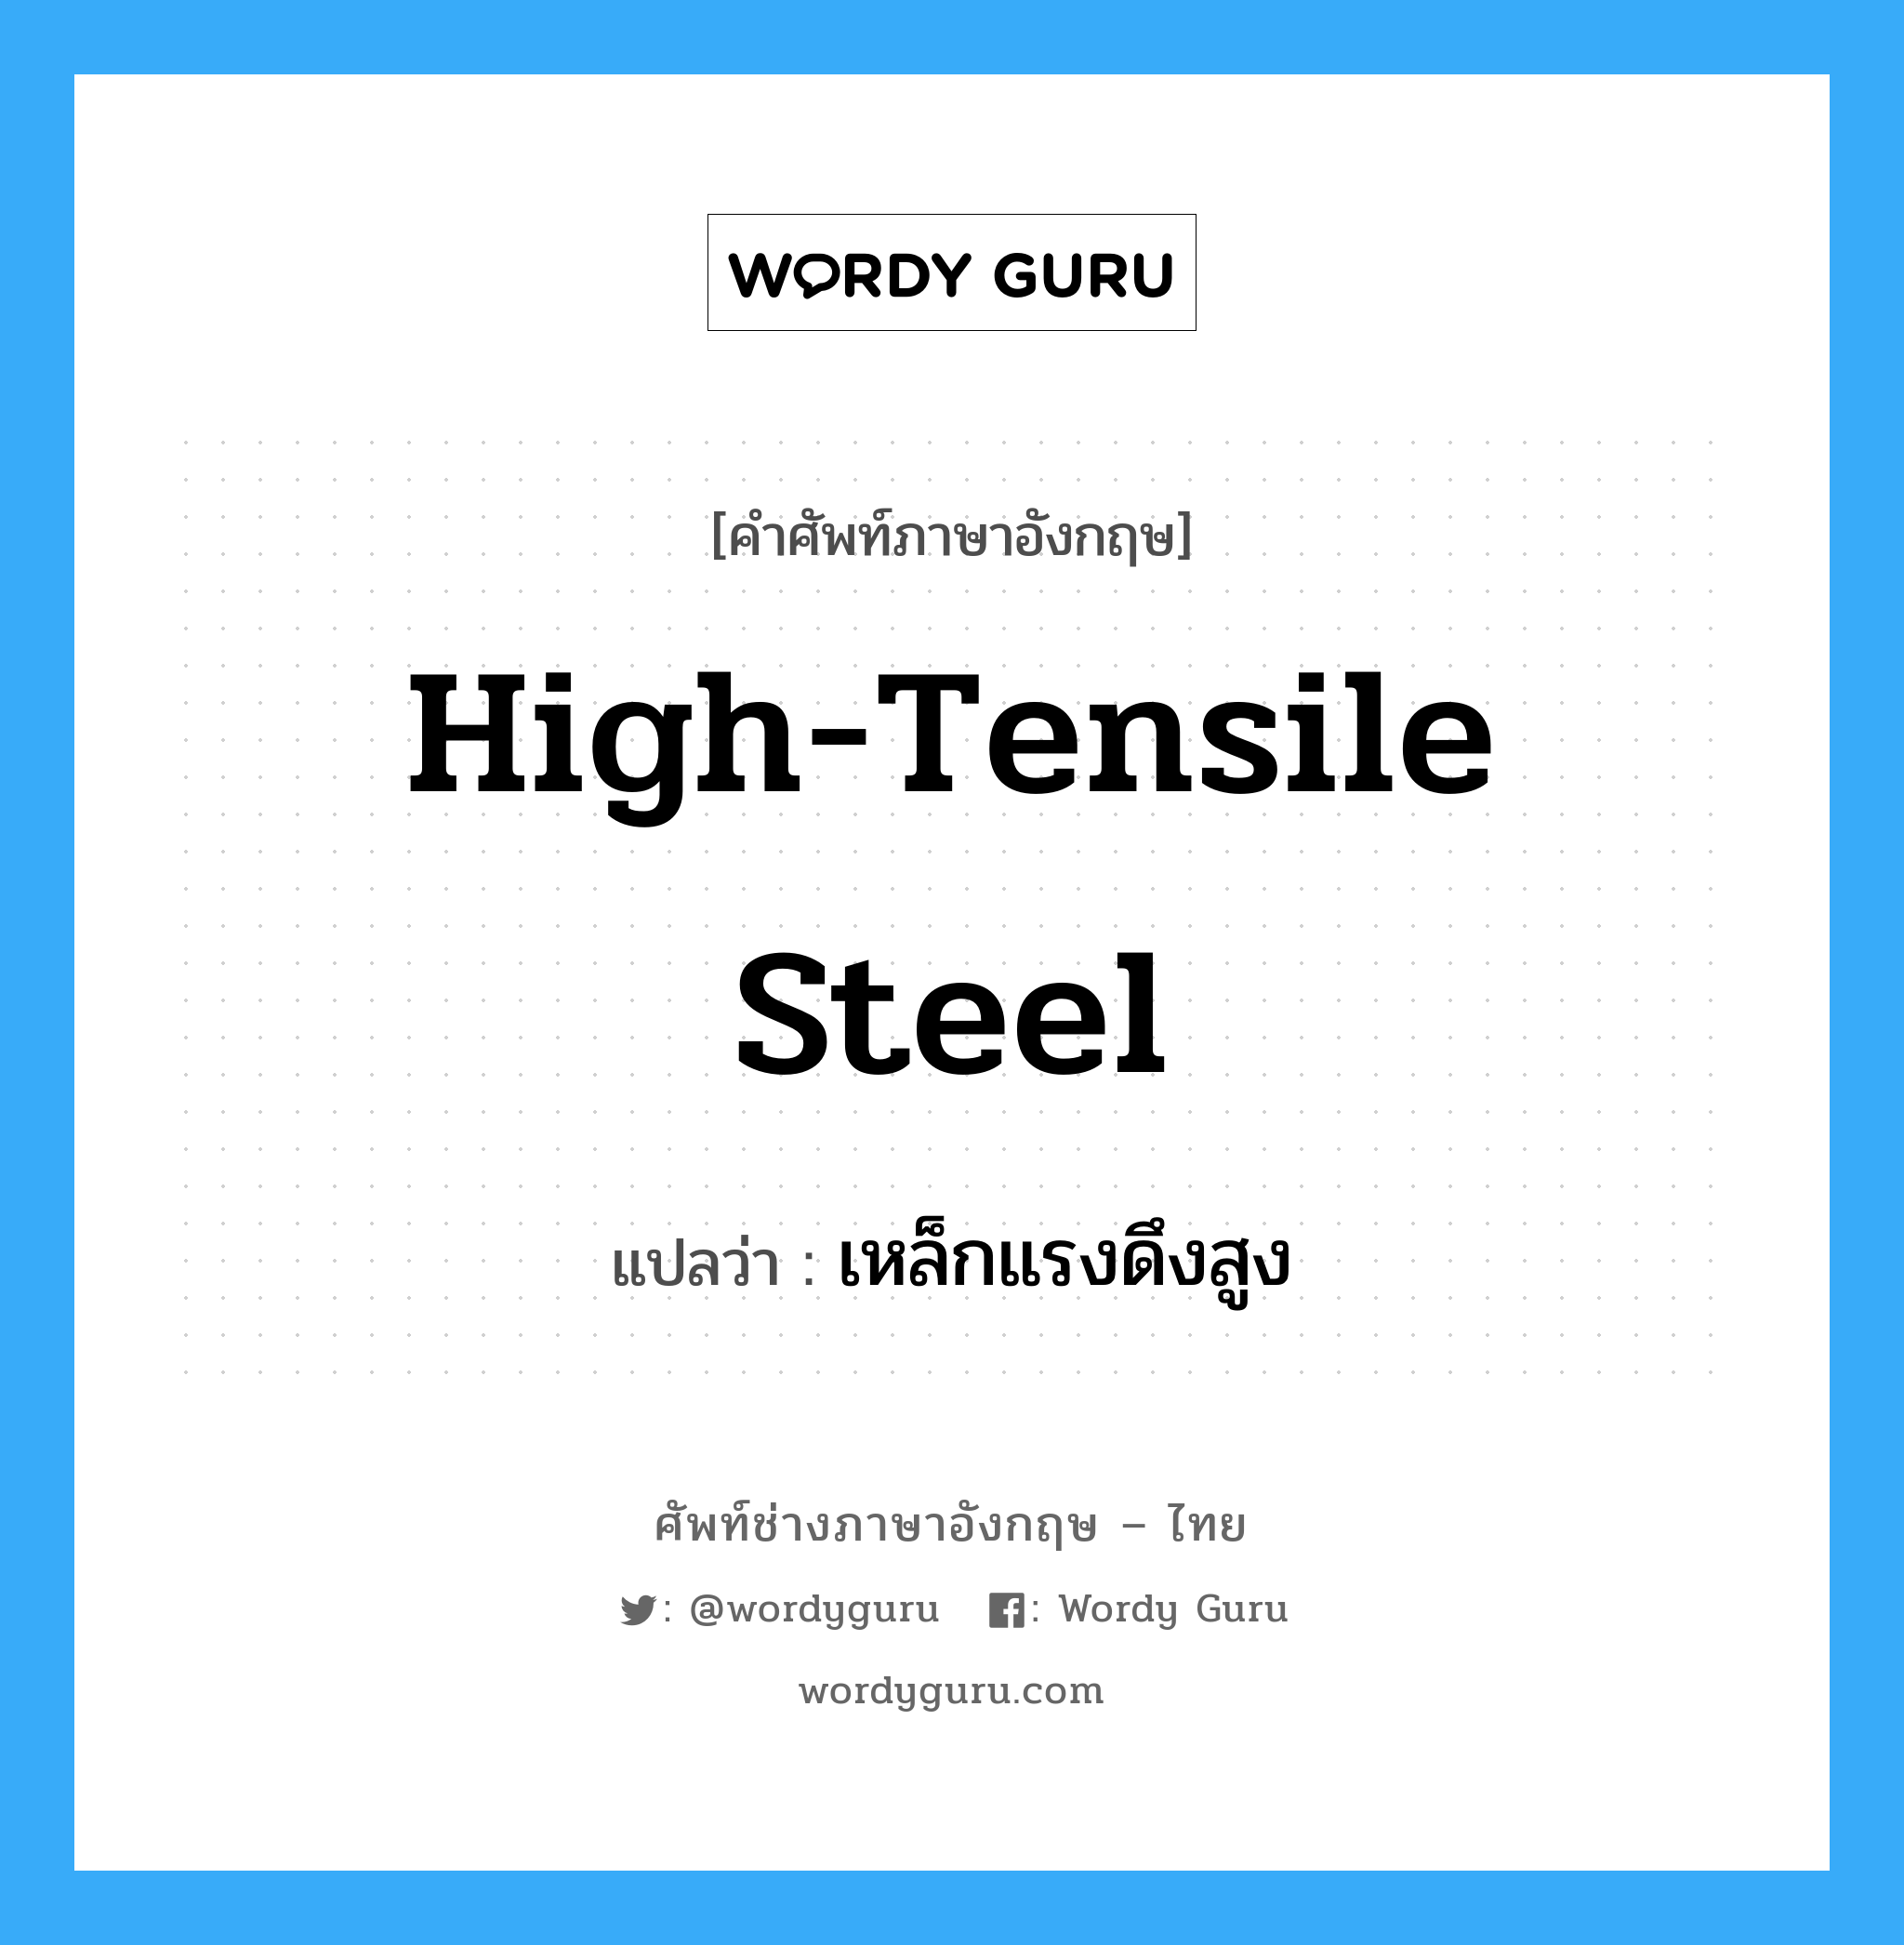 high-tensile steel แปลว่า?, คำศัพท์ช่างภาษาอังกฤษ - ไทย high-tensile steel คำศัพท์ภาษาอังกฤษ high-tensile steel แปลว่า เหล็กแรงดึงสูง